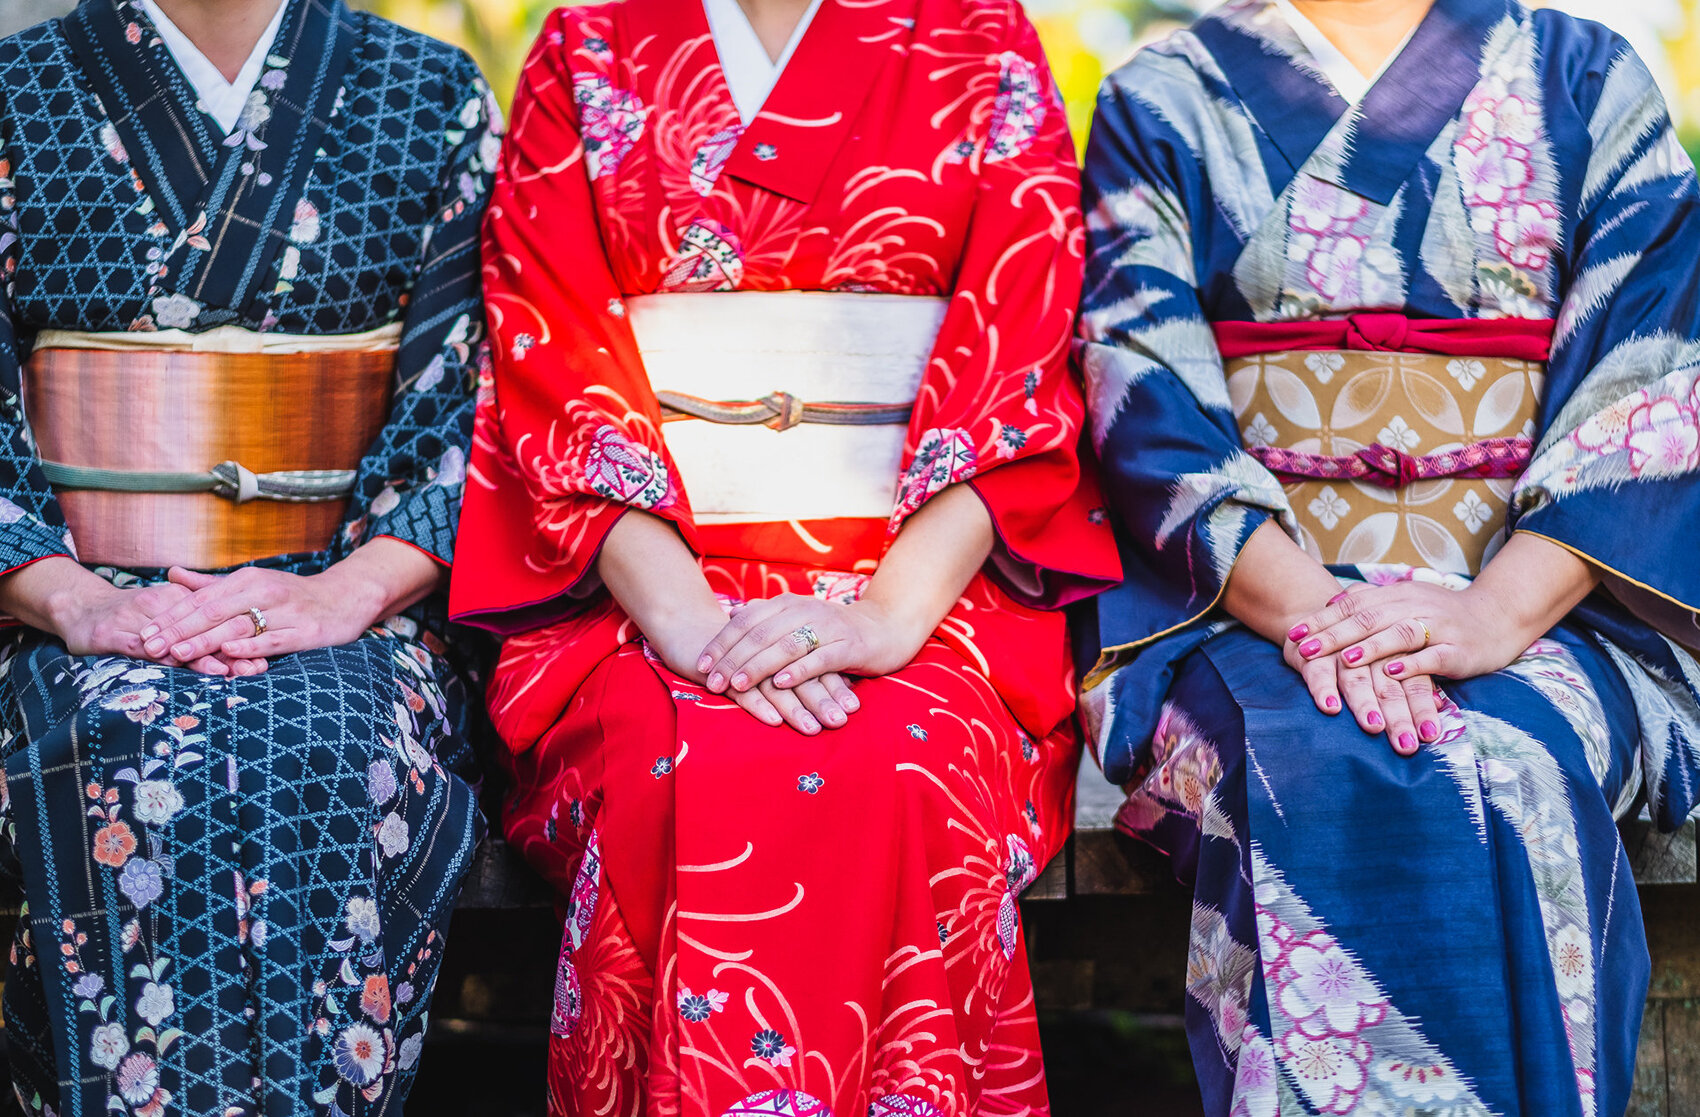 Ensaio Fotos na Mala realizado em Kyoto